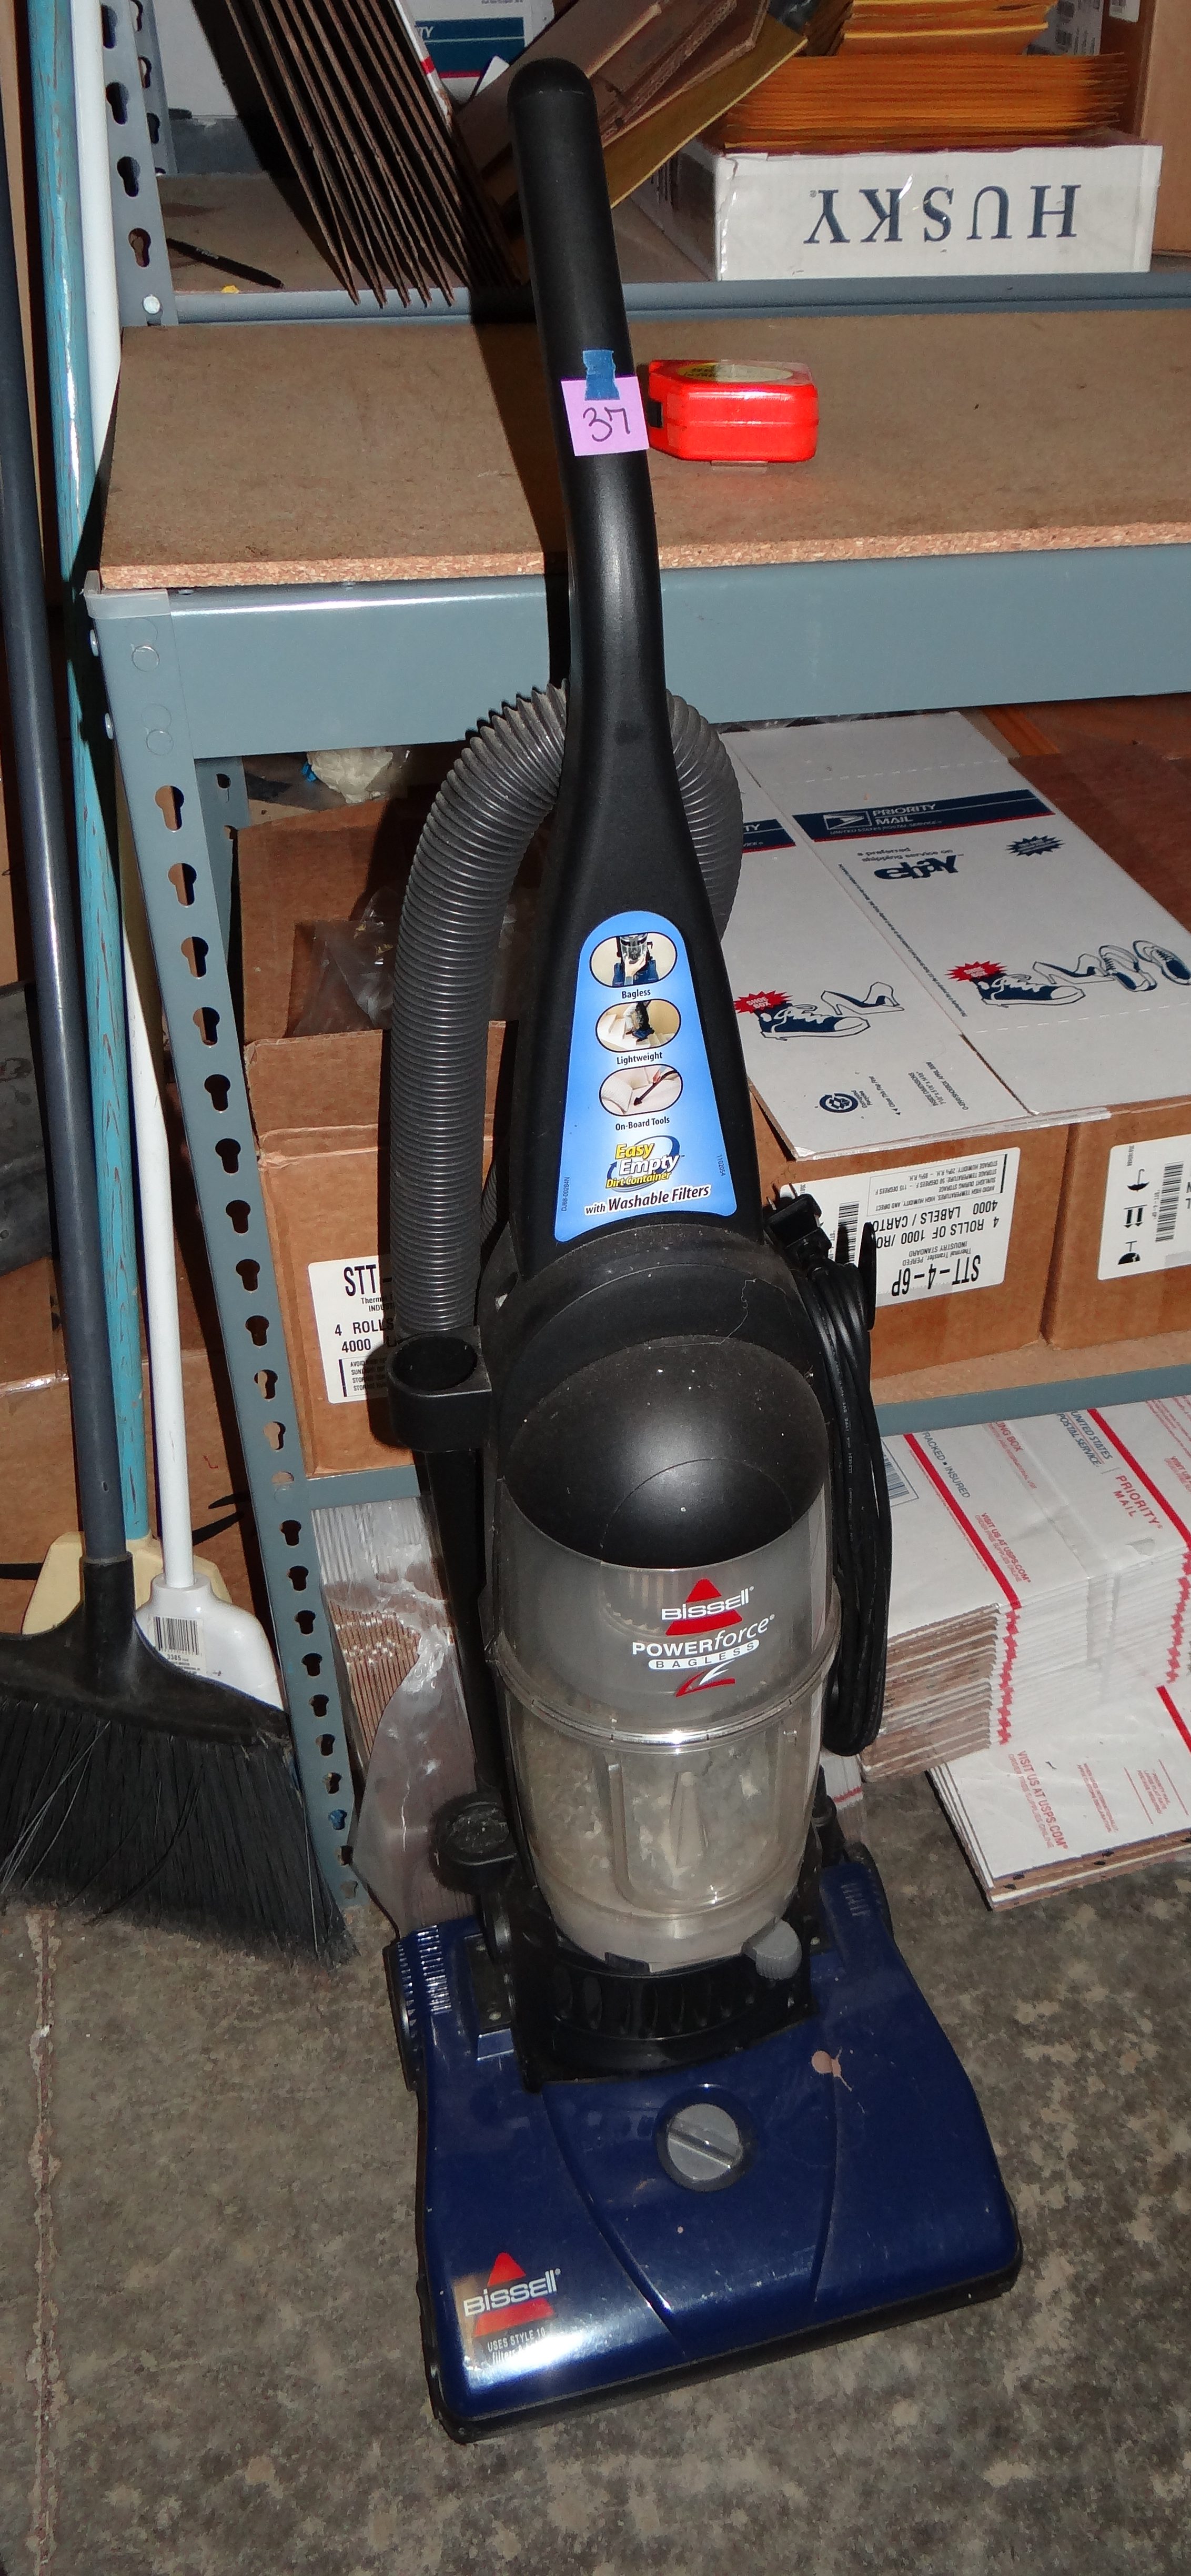 37-Bissell Powerforce Bagless Vacuum